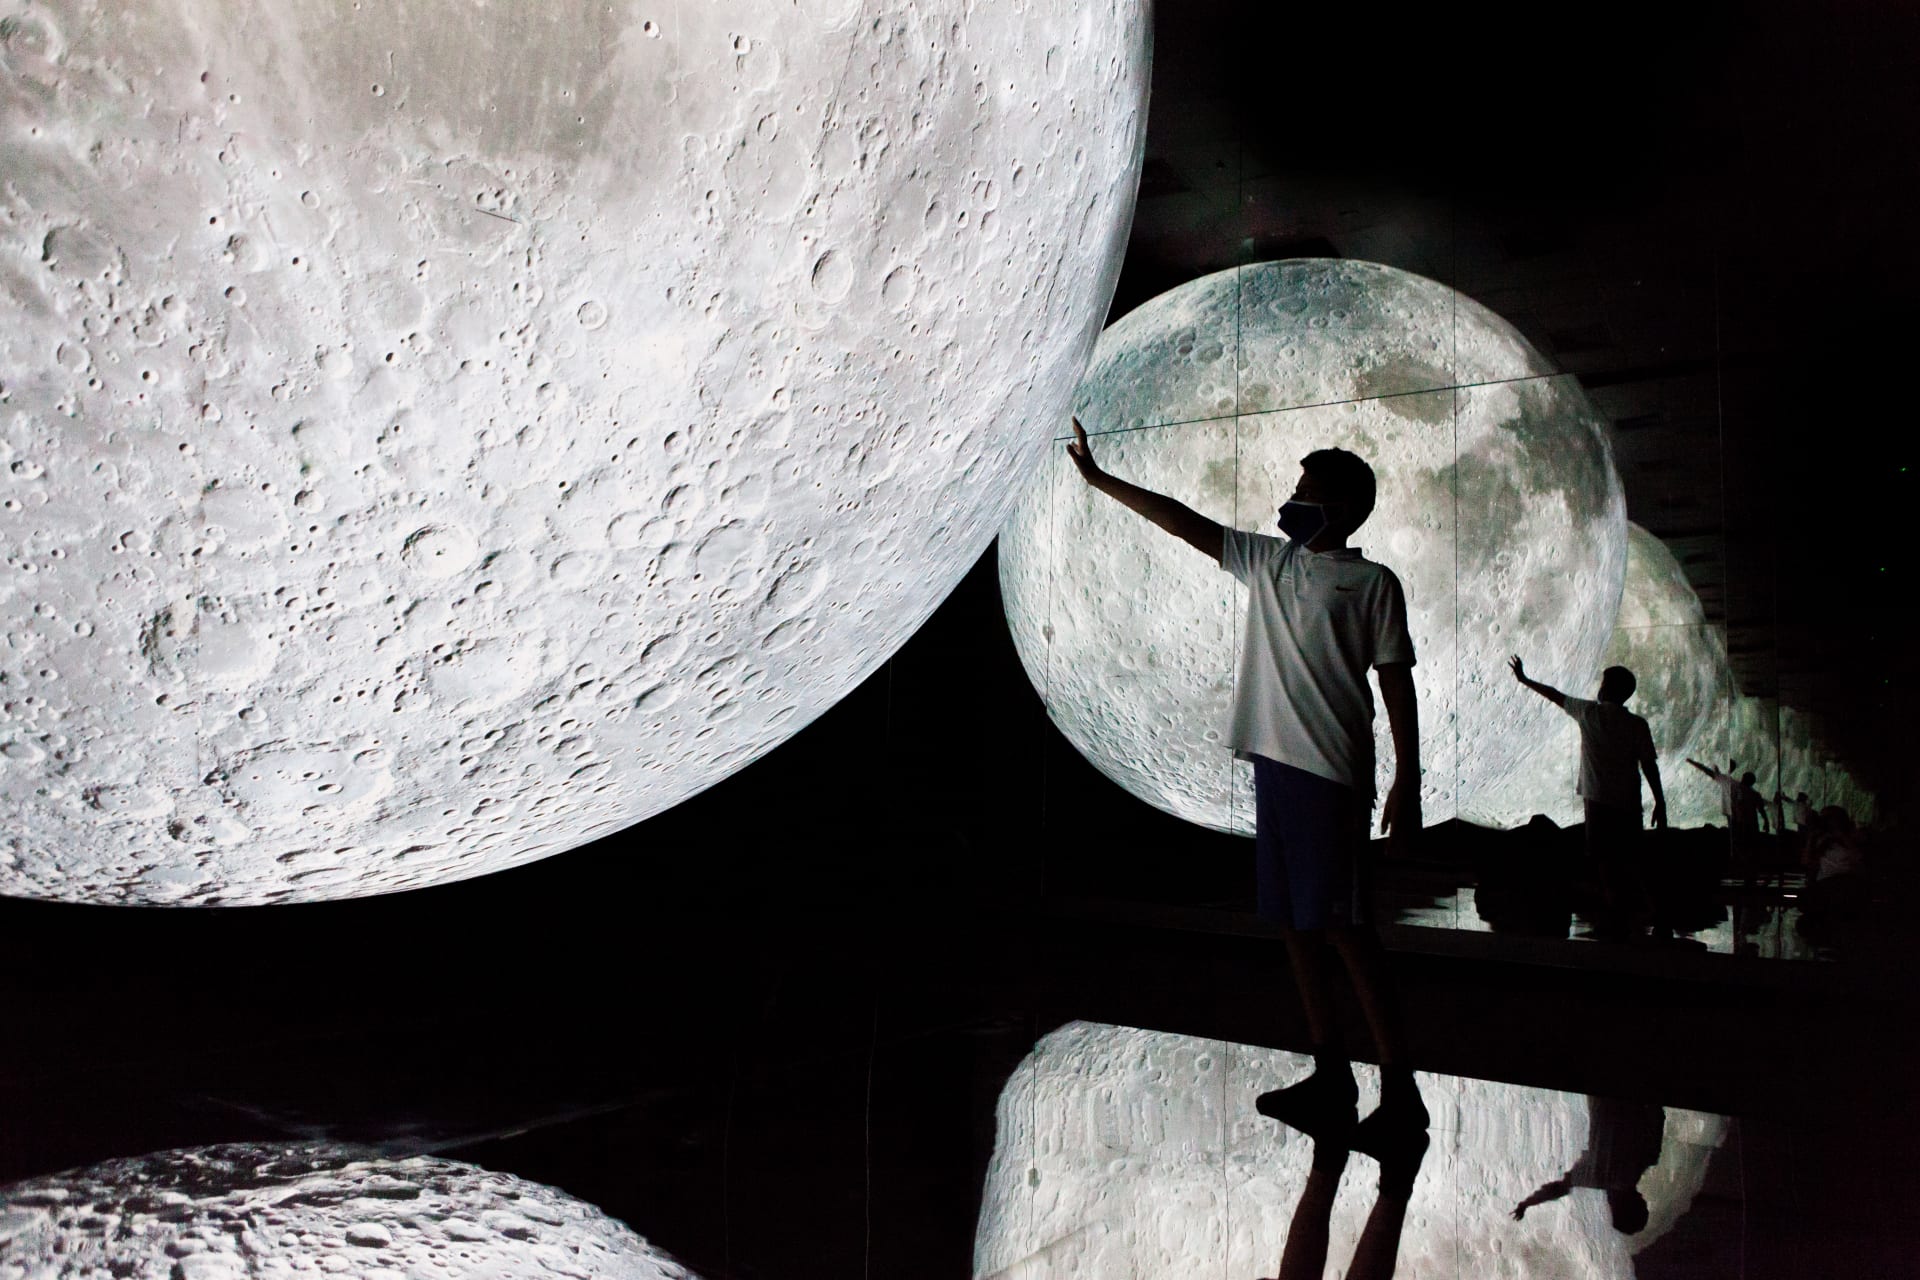 تجربة تبهر الحواس  صنعت بمساعدة "ناسا".. سيُشعرك هذا القمر الضخم في دبي أنك في رحلة إلى الفضاء 